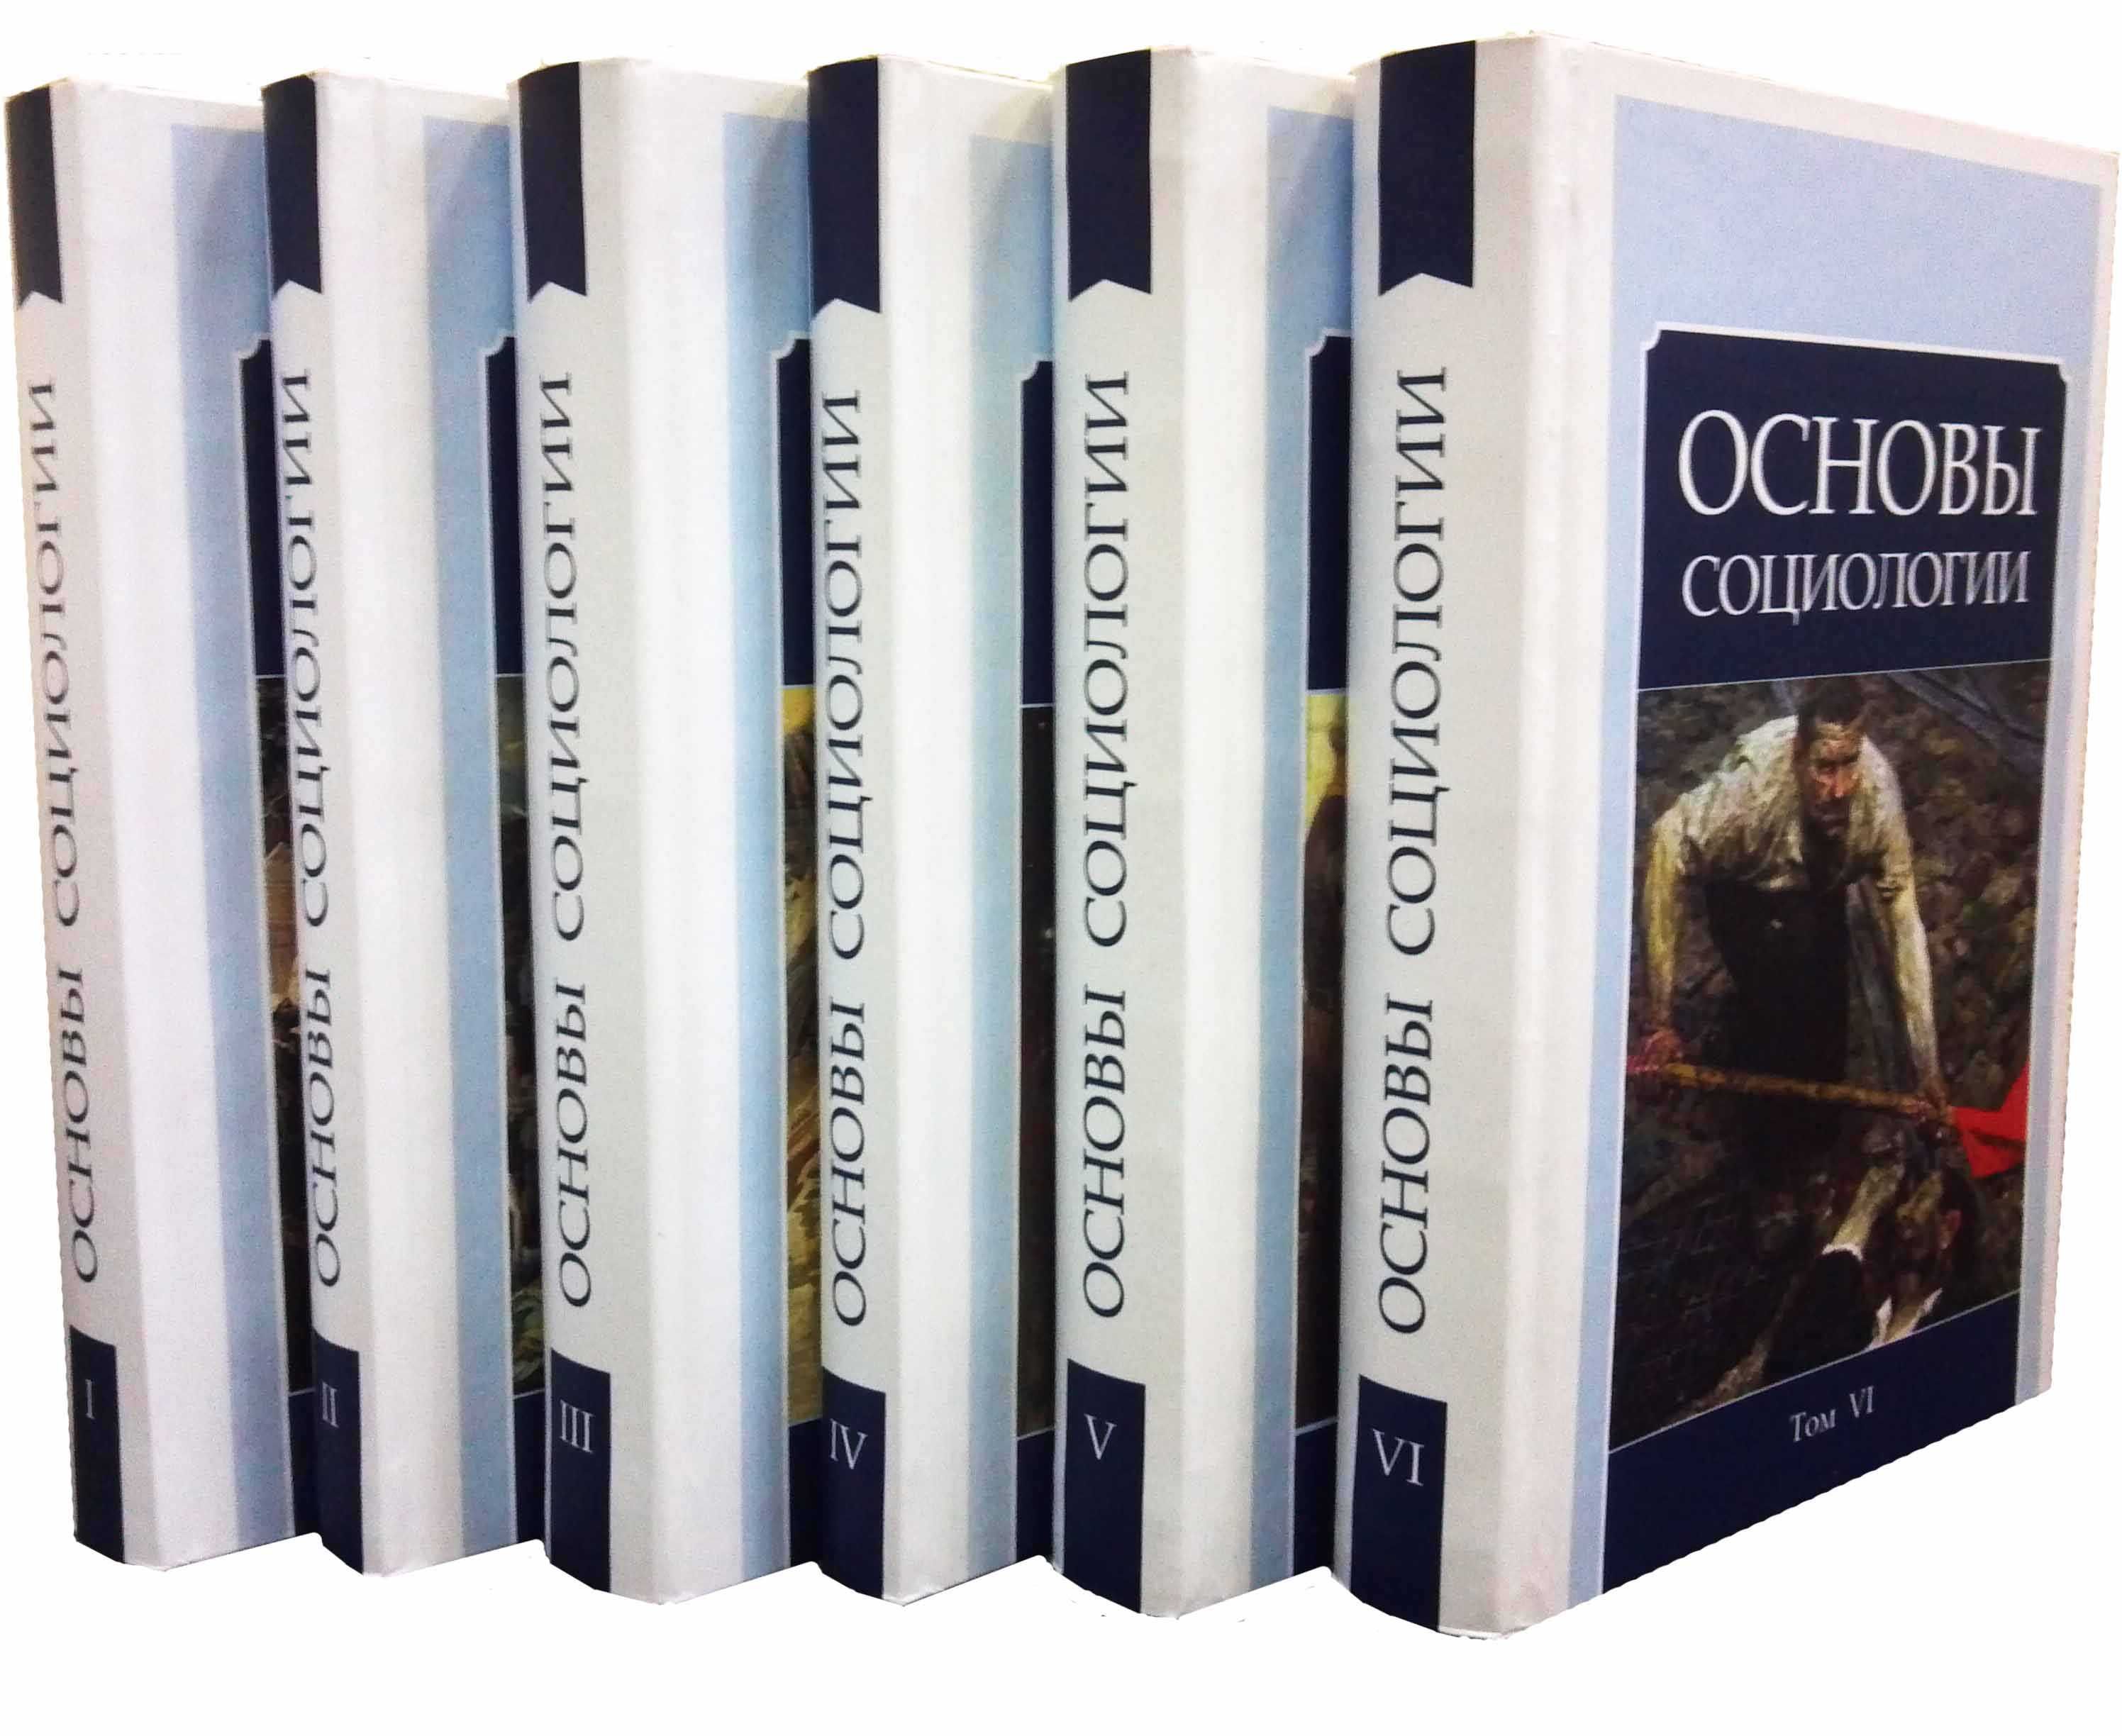 Основы социологии комплект 6 томов ВП (КОБ)